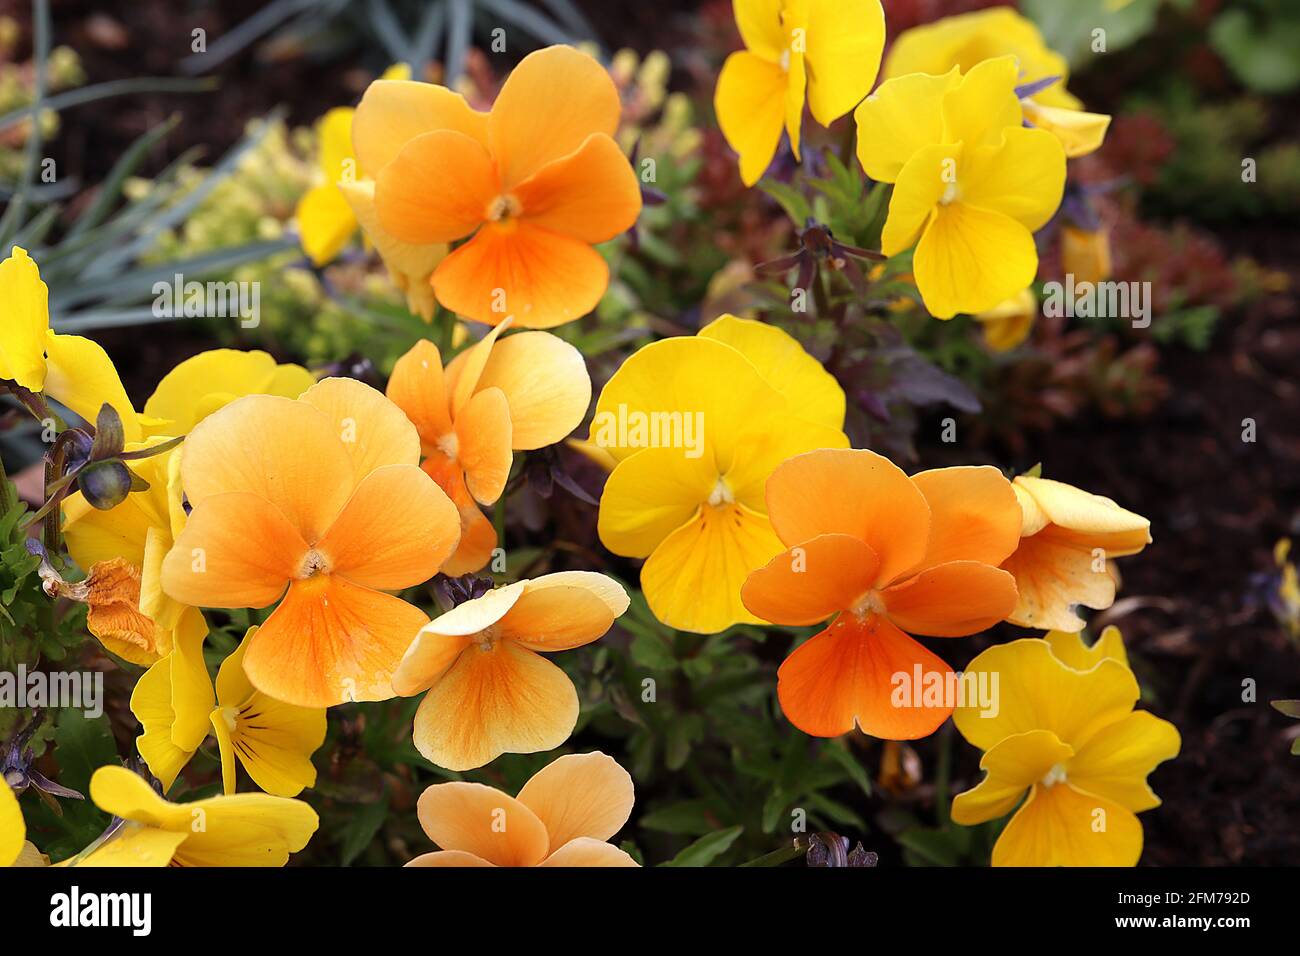 Viola / Pansy ‘Sorbet Yellow’ fleurs jaunes avec petits whiskers Viola / Pansy ‘Sorbet Deep Orange’ fleurs orange, mai, Angleterre, Royaume-Uni Banque D'Images